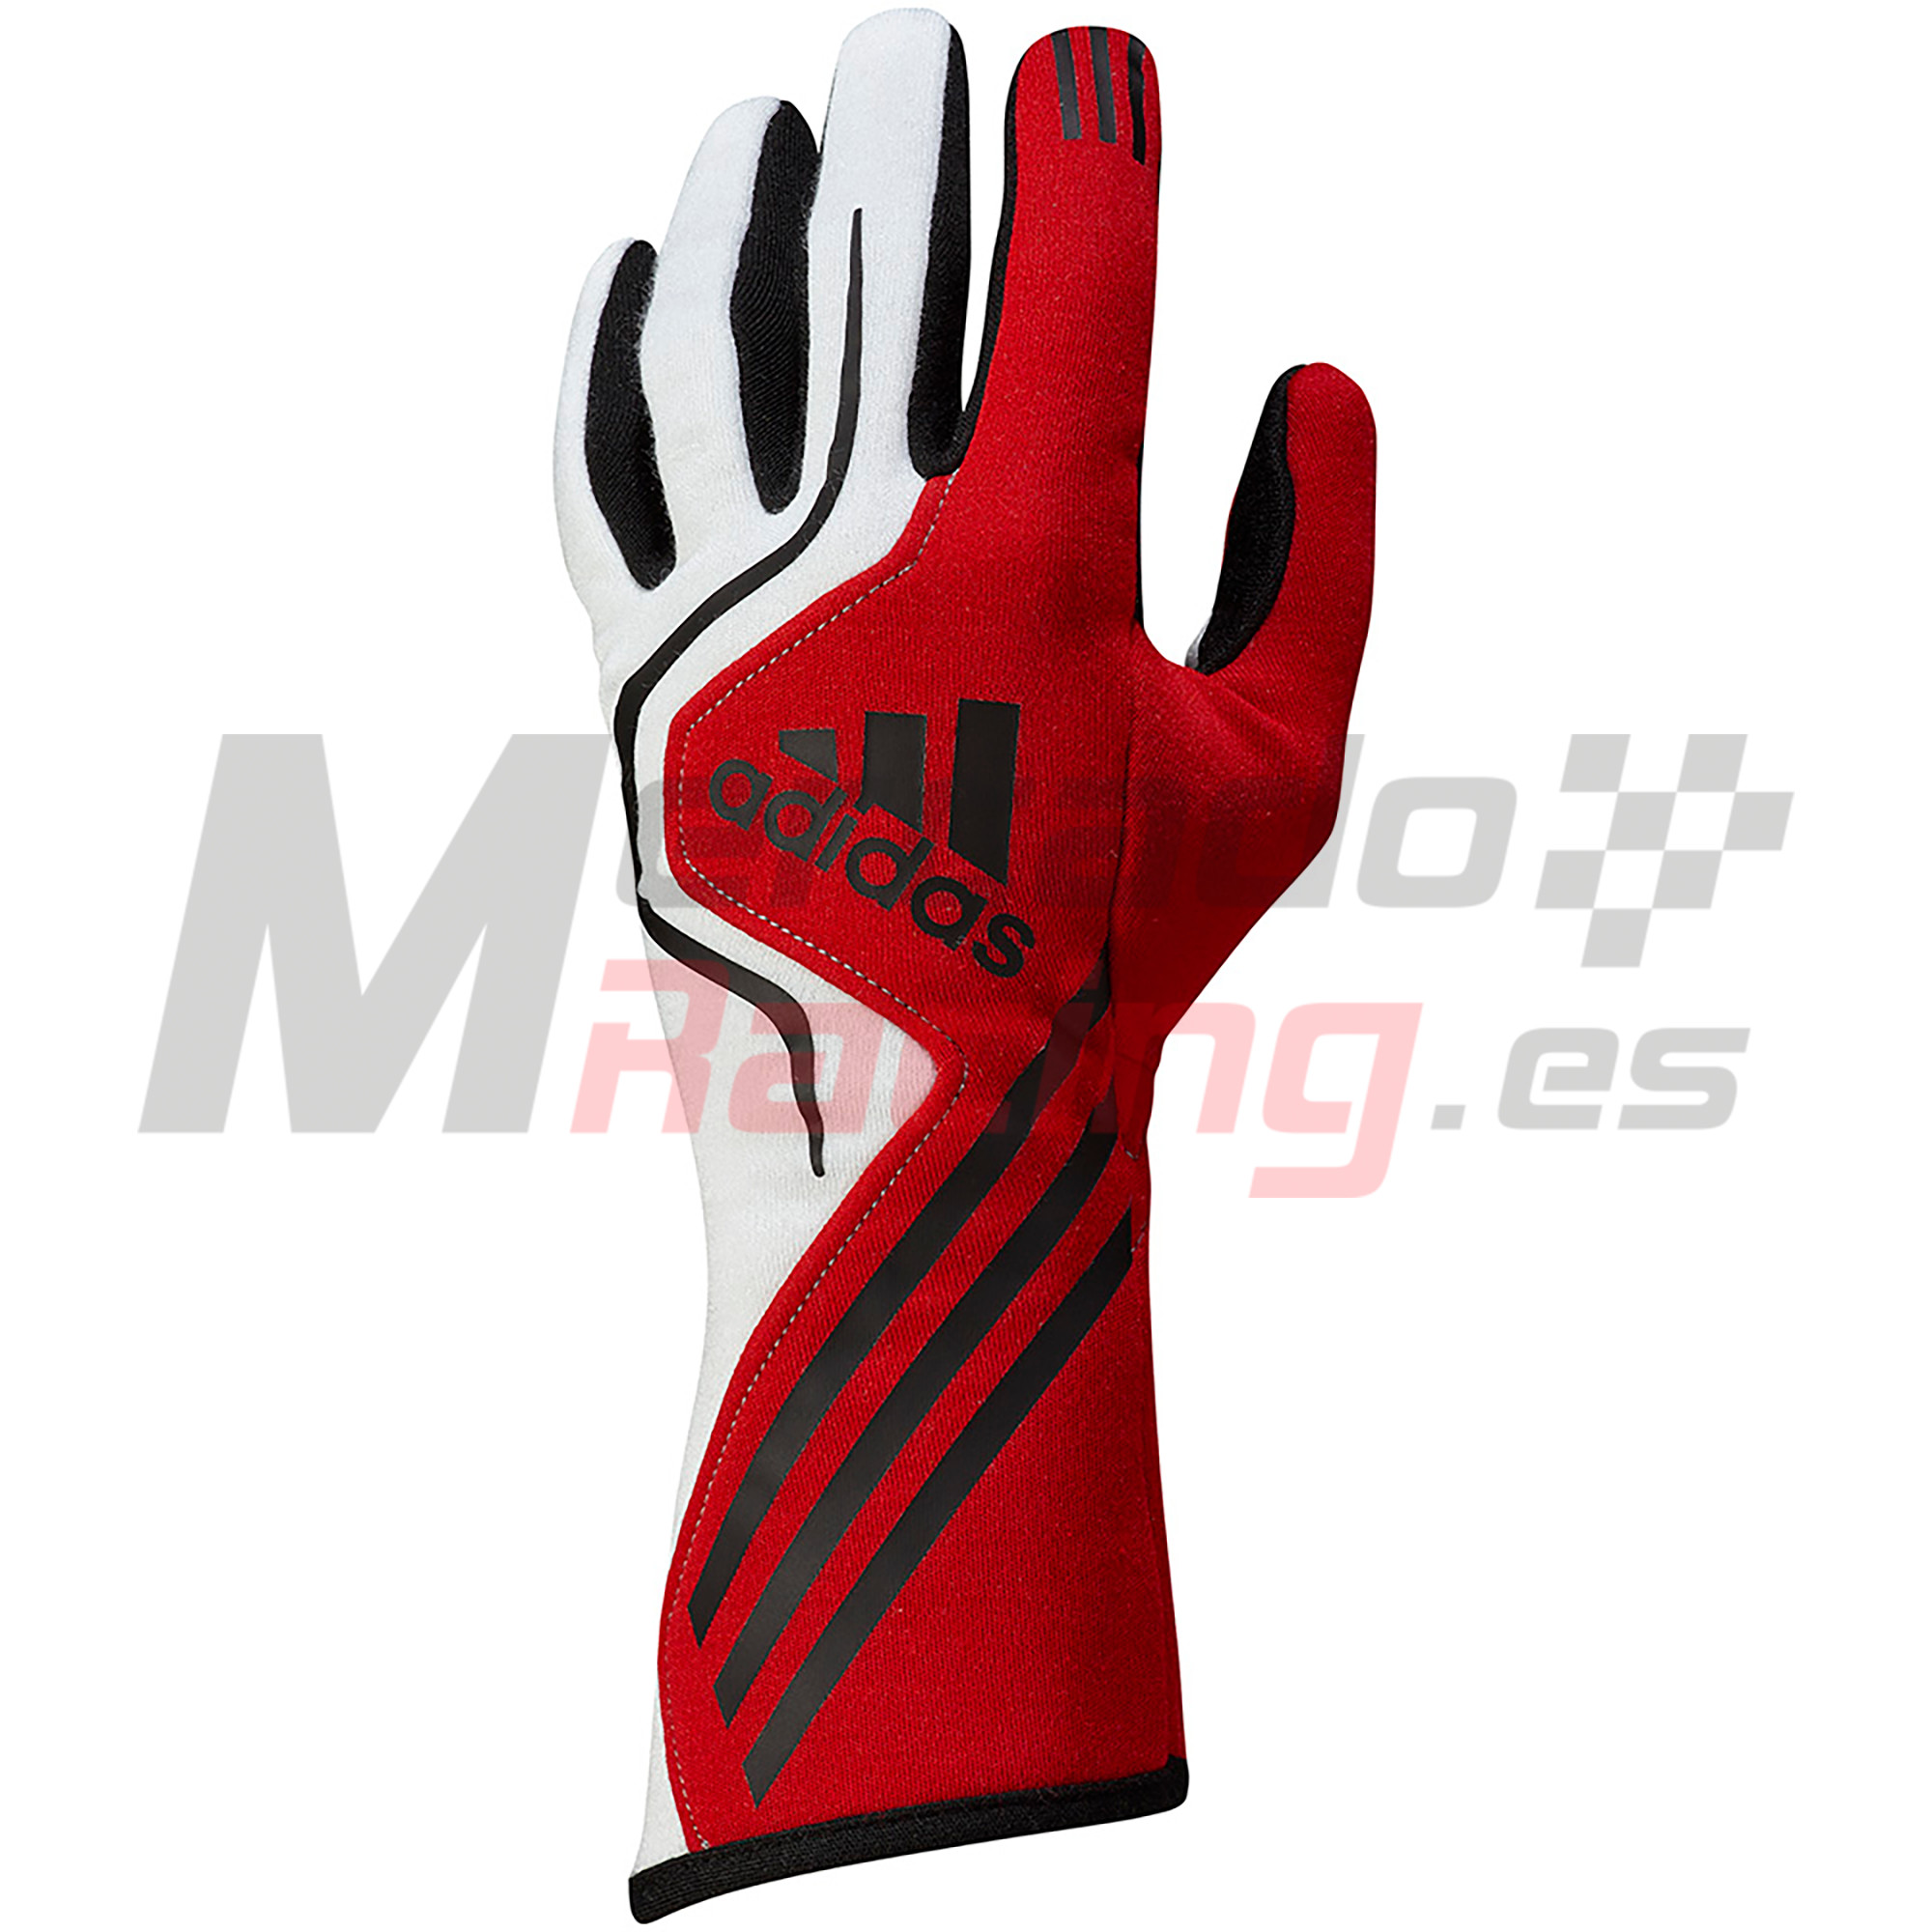 Adidas RS Glove Red Tienda de